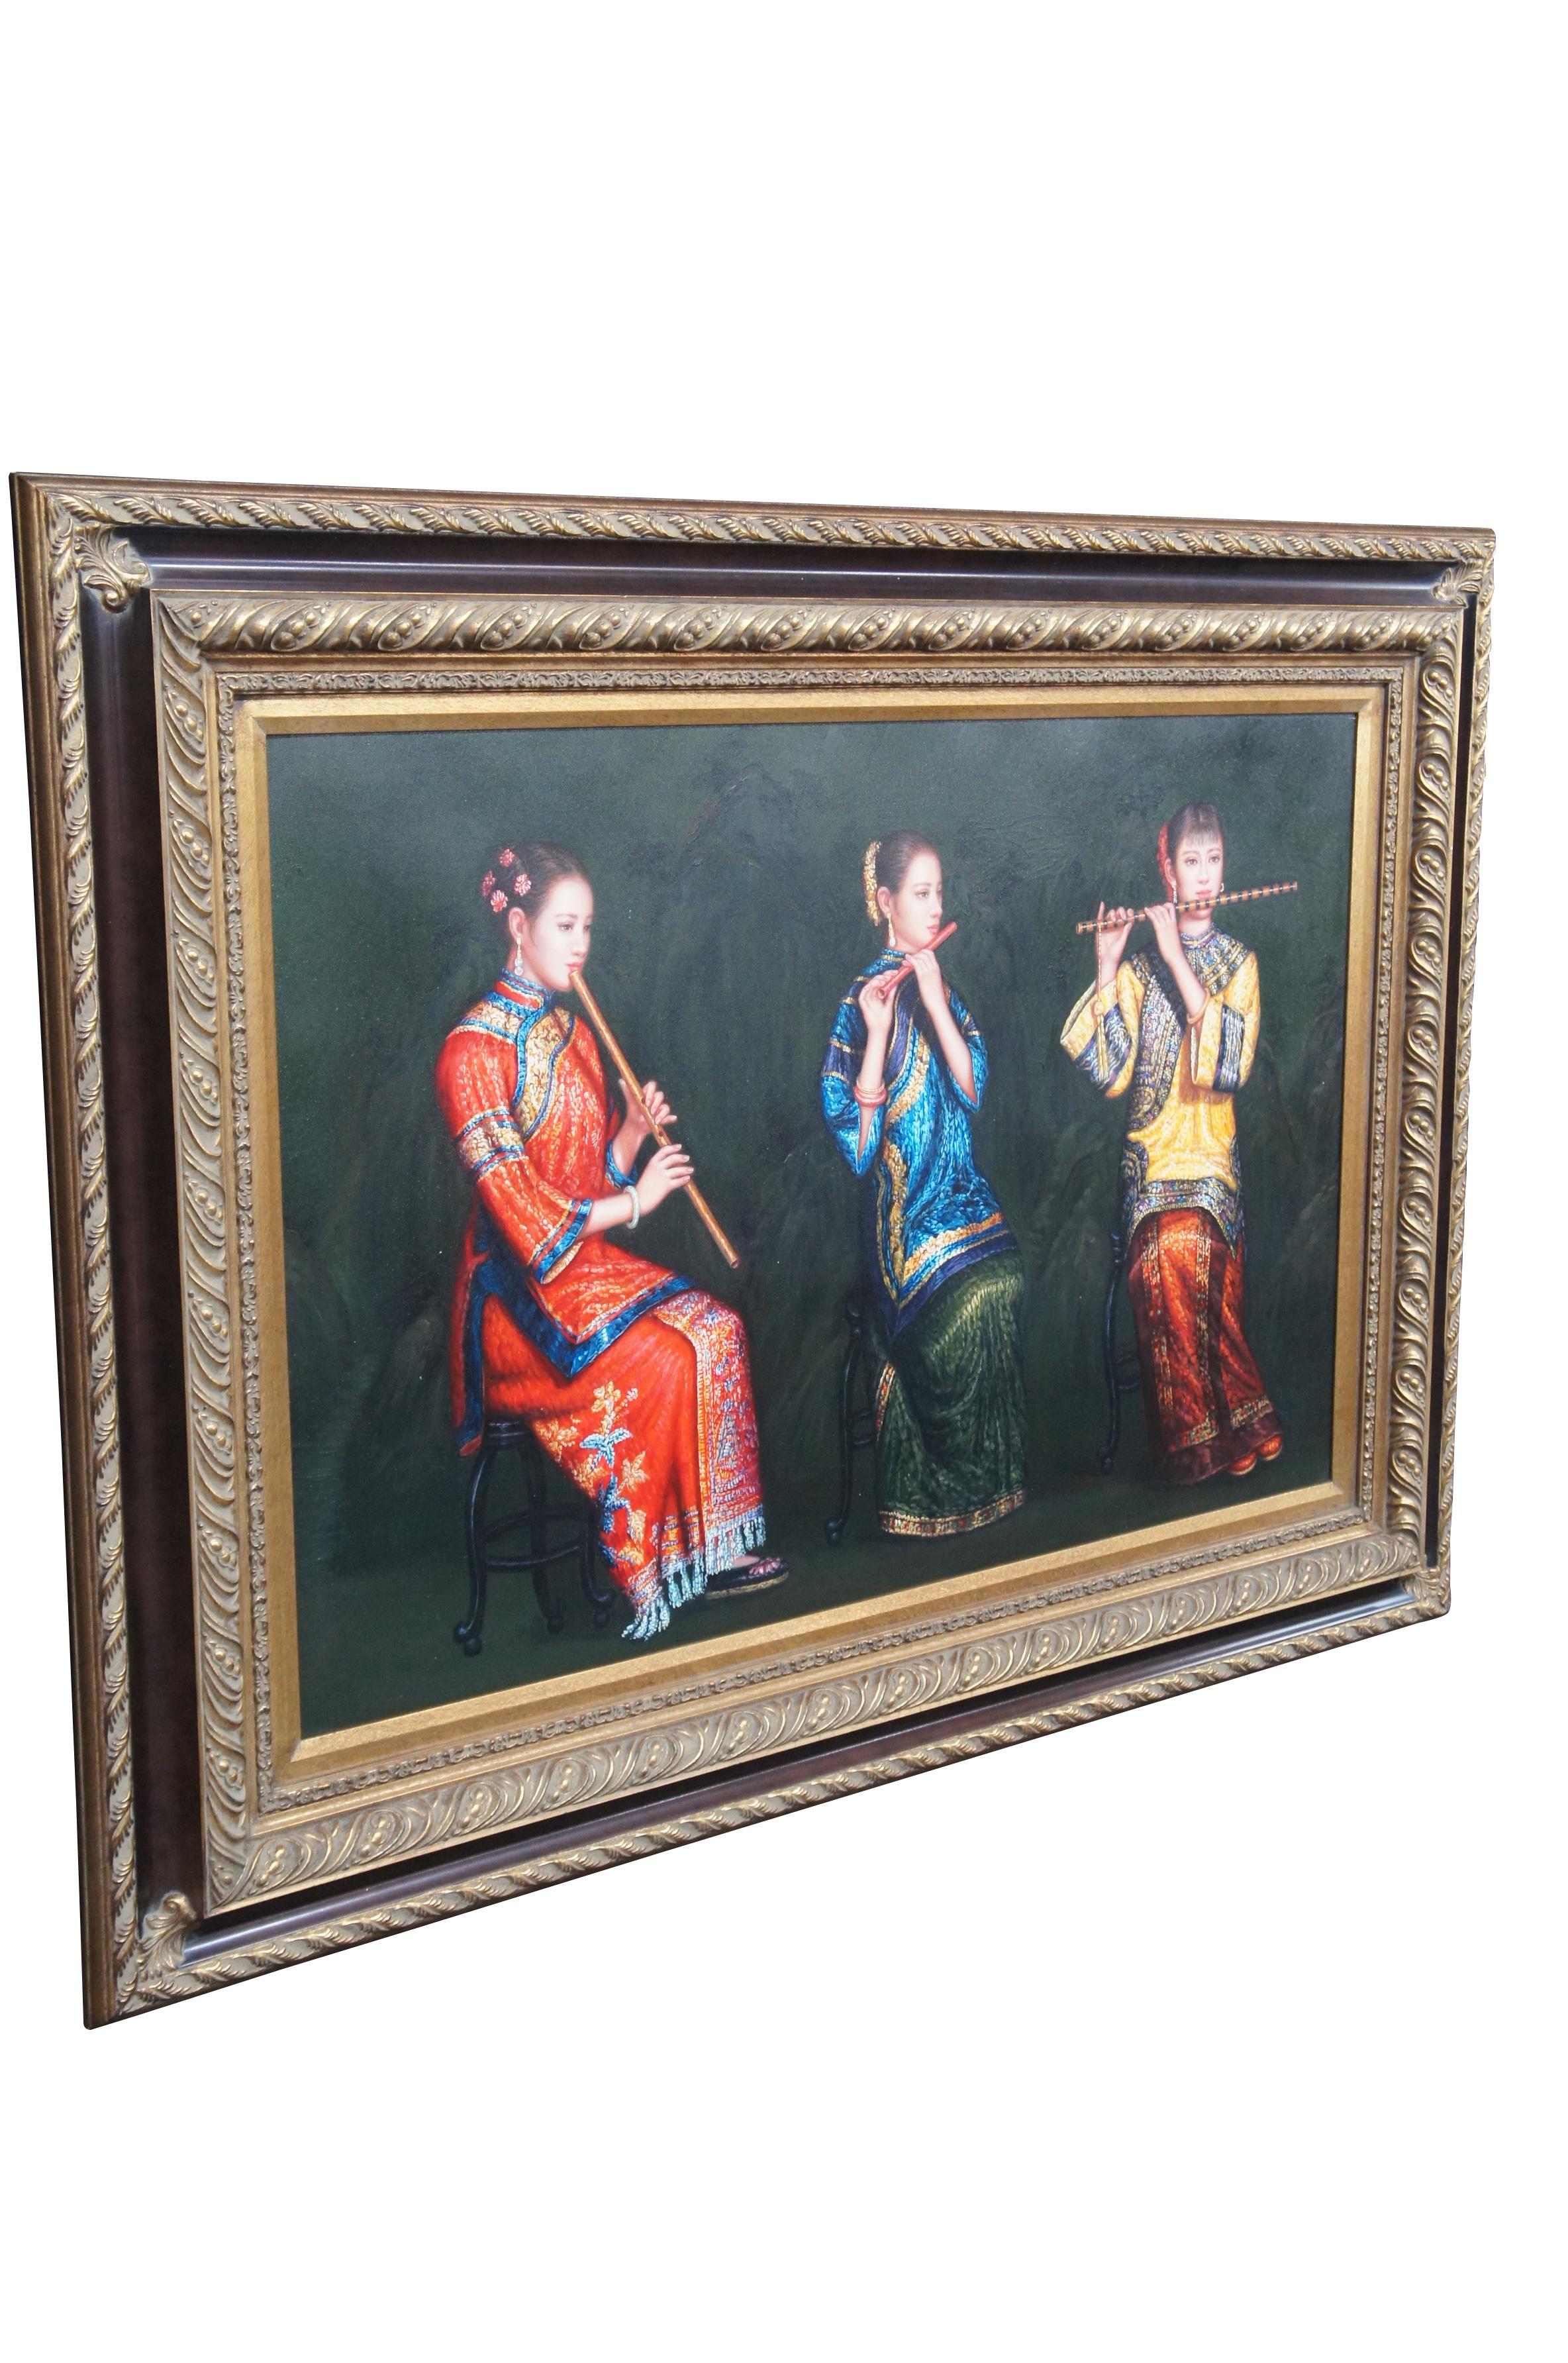 Vintage Trio de femmes chinoises jouant de la flûte peinture à l'huile sur toile d'après Chen Yifei.  Elle met en scène trois jeunes musiciens en tenue de cour traditionnelle jouant du Dizi / flûtes de bambou.

Chen Yifei (chinois : 陈逸飞 ; 12 avril